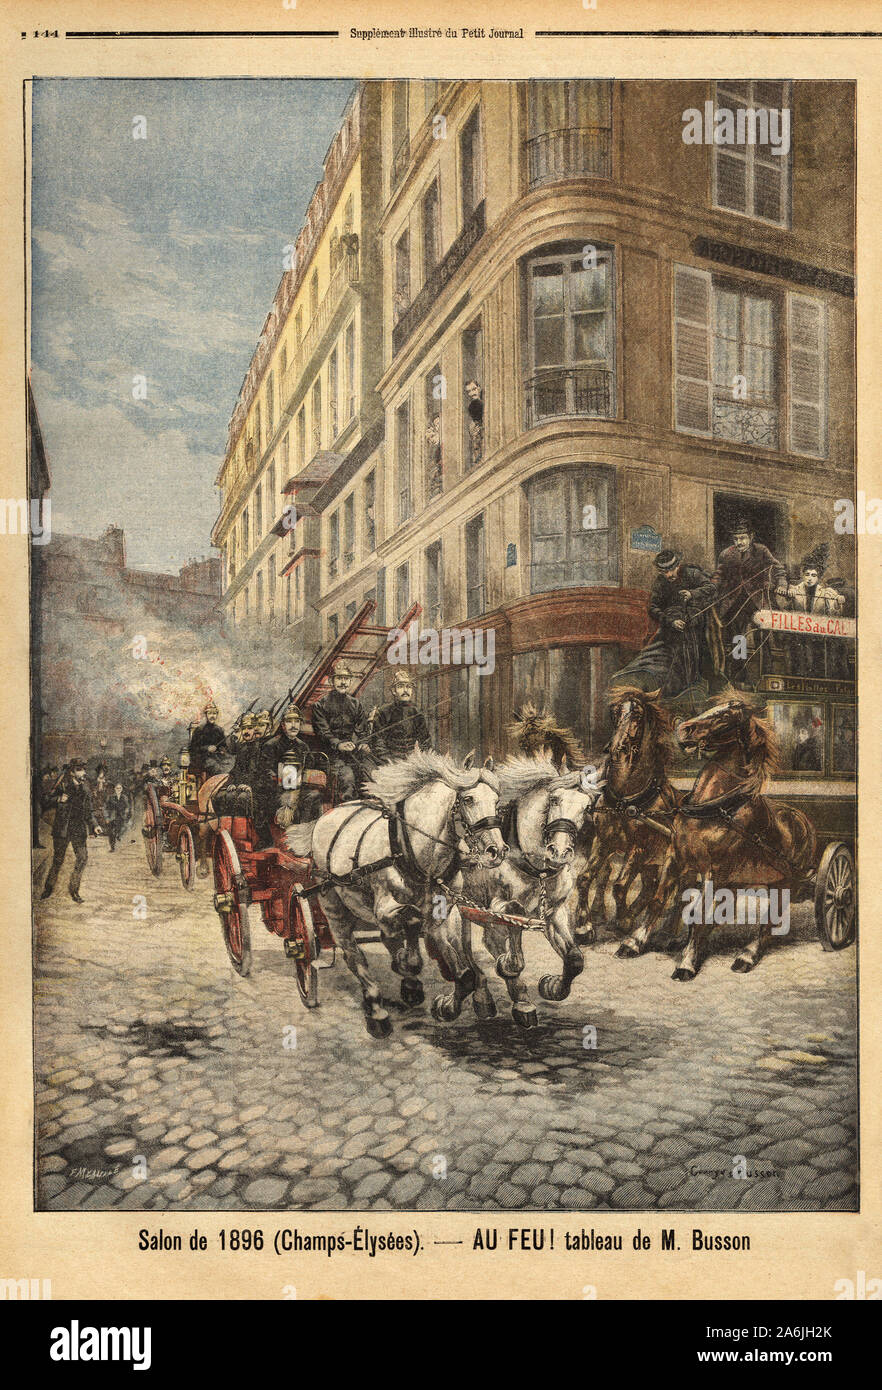 La pompe a vapeur et les vehicules des sapeurs pompiers de Paris, d'apres un tableau de M. Busson. Gravure in 'Le petit journal' 3/05/1896. Collection Stock Photo